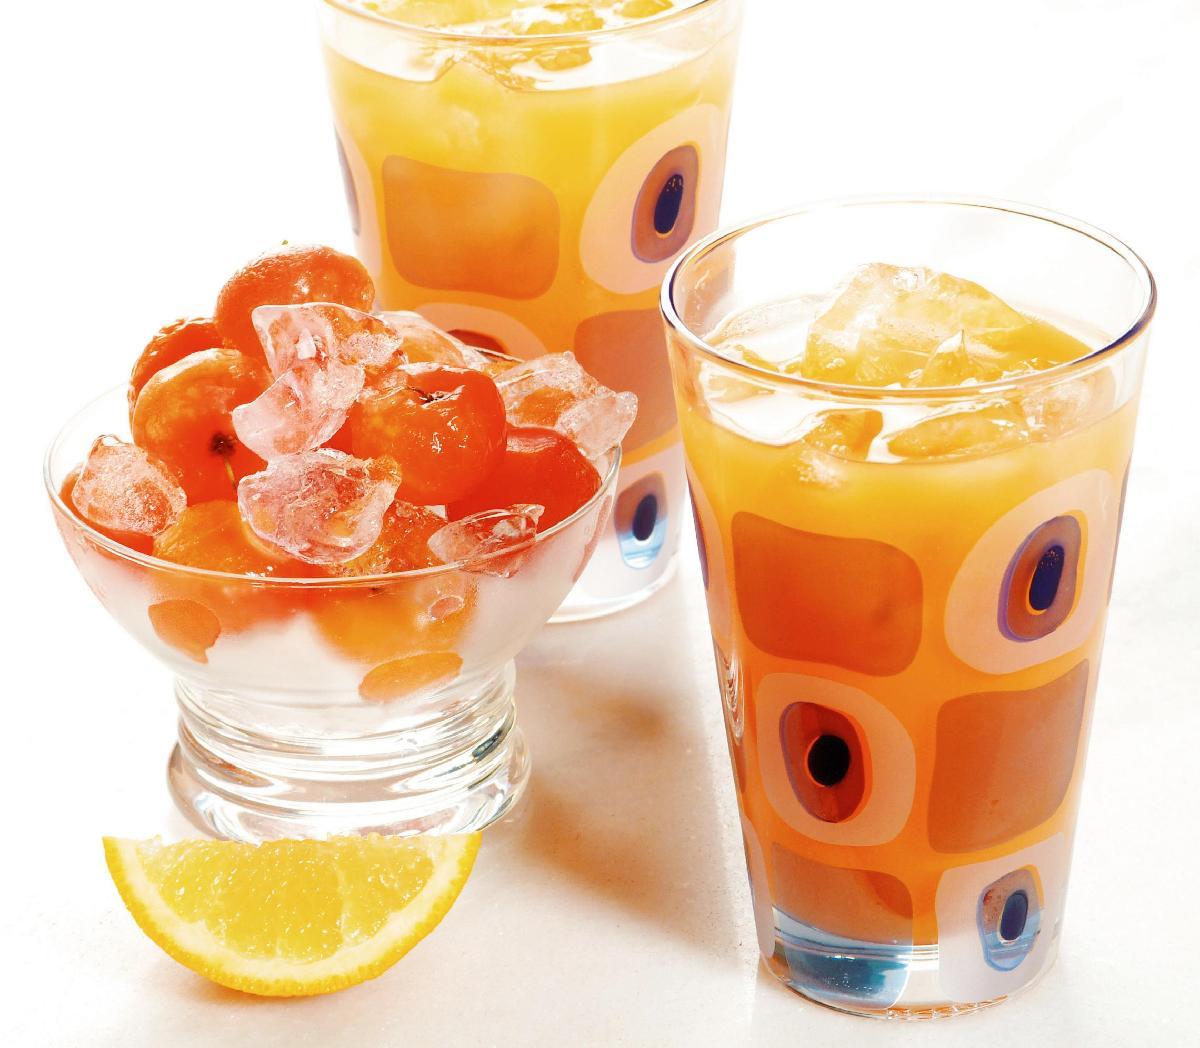 Tempo: 15min Rendimento: 1 Dificuldade: fácil Ingredientes: 4 xícaras (chá) de suco de laranja 4 saquinhos de polpa de acerola congelada 1 xícara (chá) de